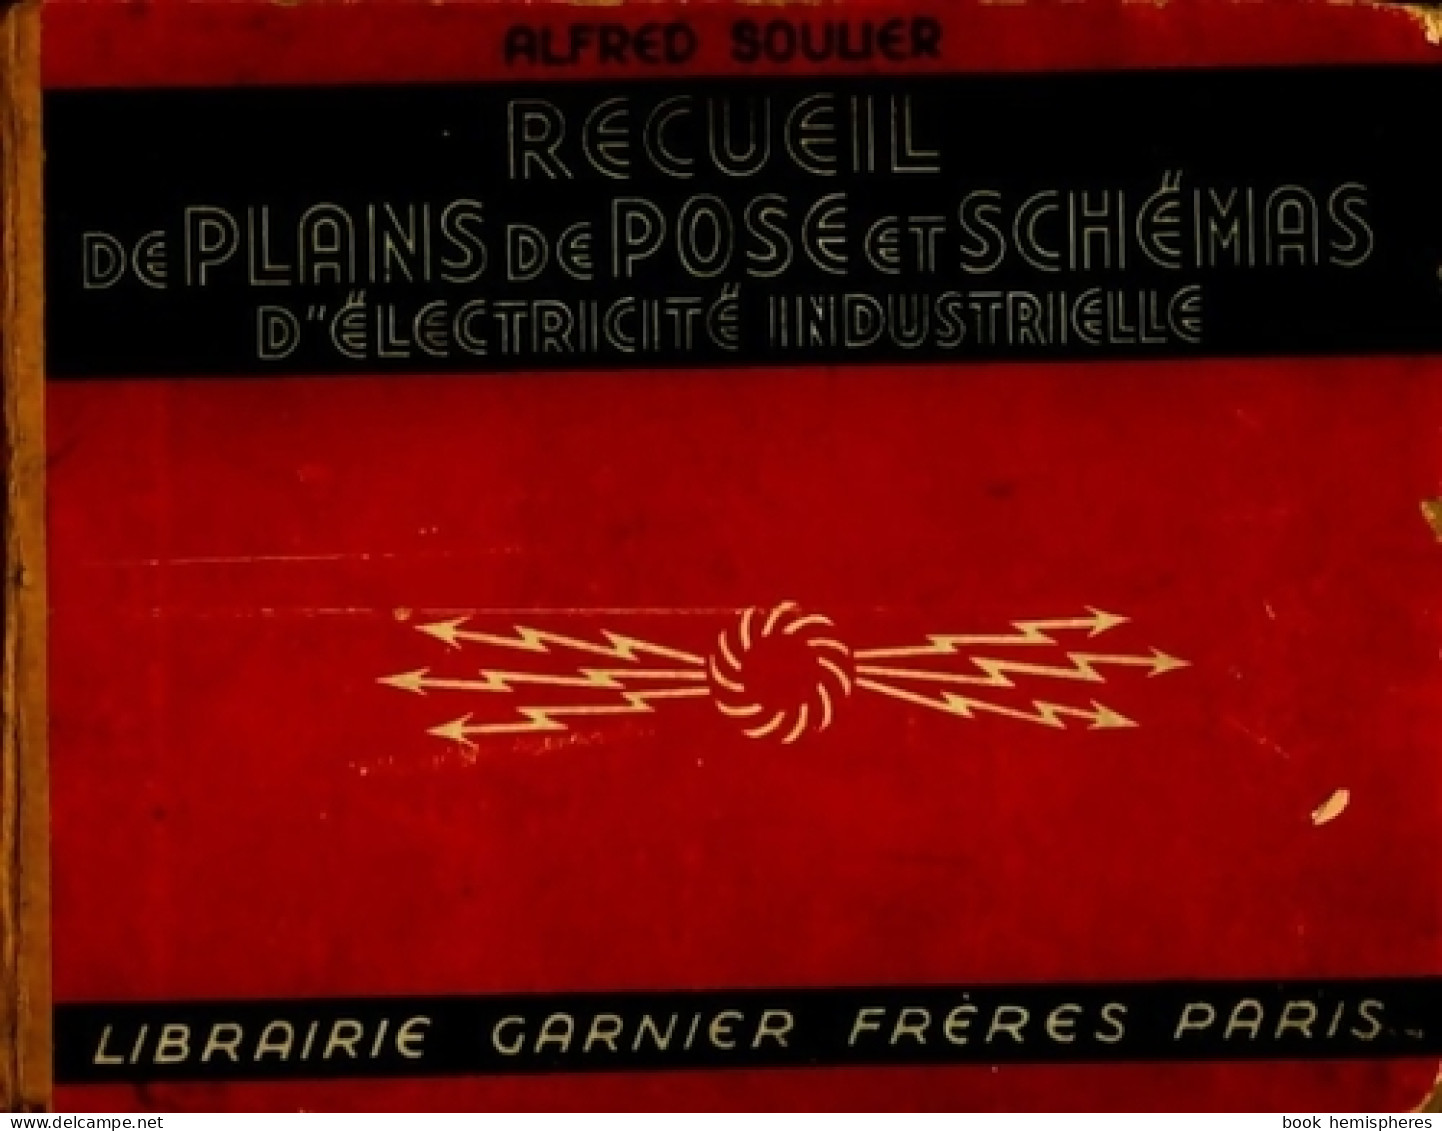 Recueil De Plans De Pose Et Schémas D'électricité Industrielle (1945) De Alfred Soulier - Sciences